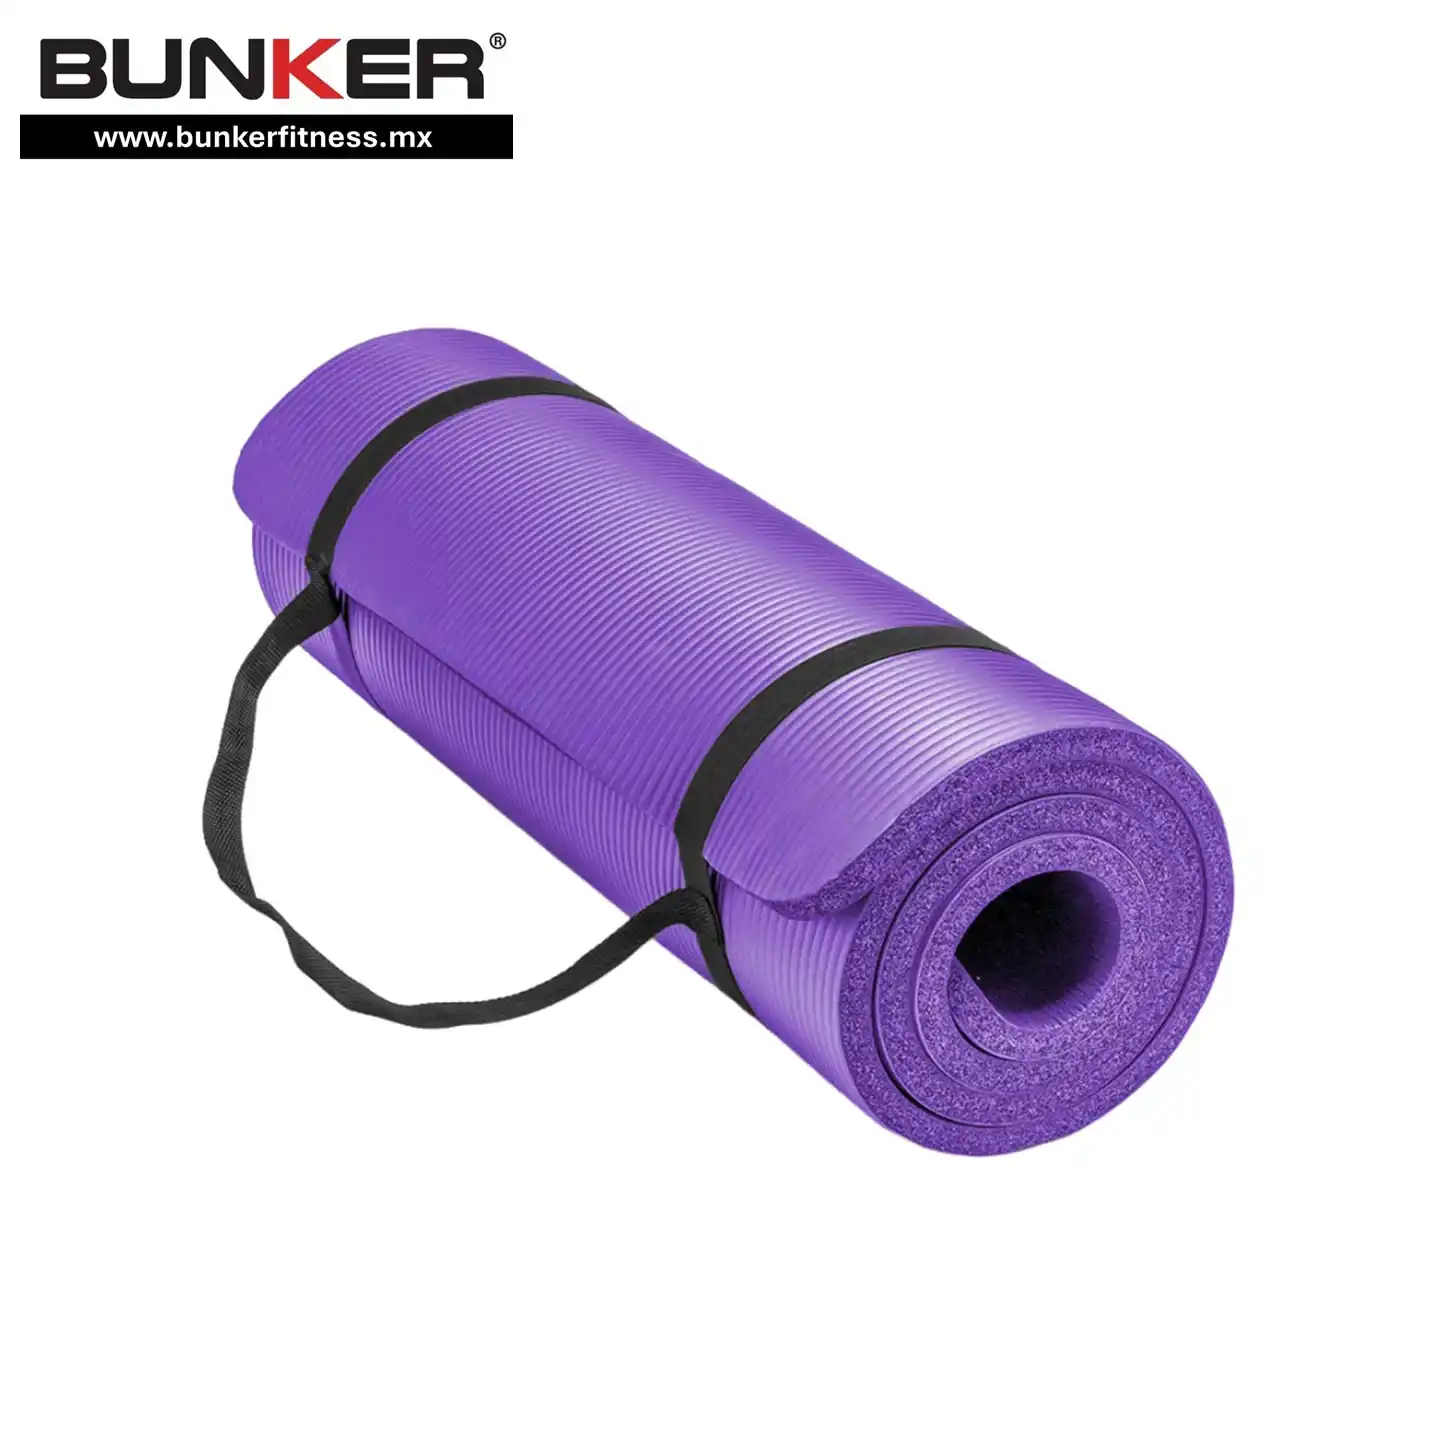 tapetes de yoga tapetes de piso para ejercicio y gimnasio en casa bunker gym bunker fitness